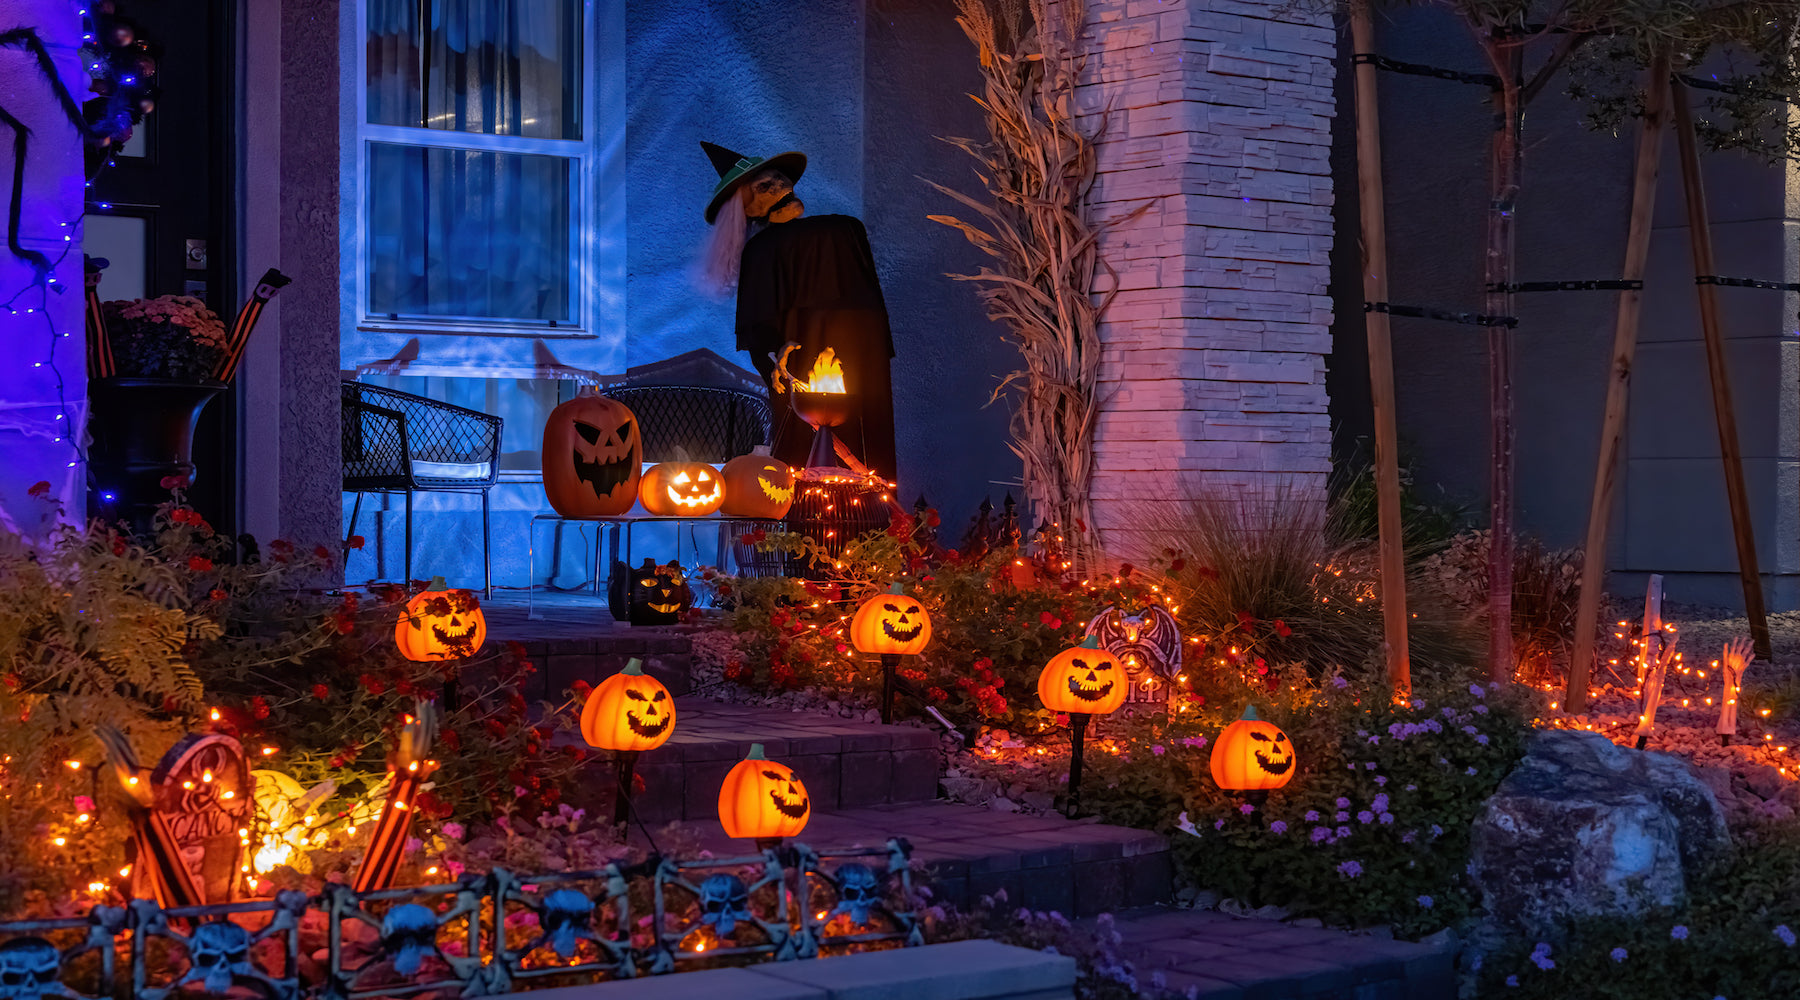 Halloween lighting shown installed on house at night illuminating halloween decorations